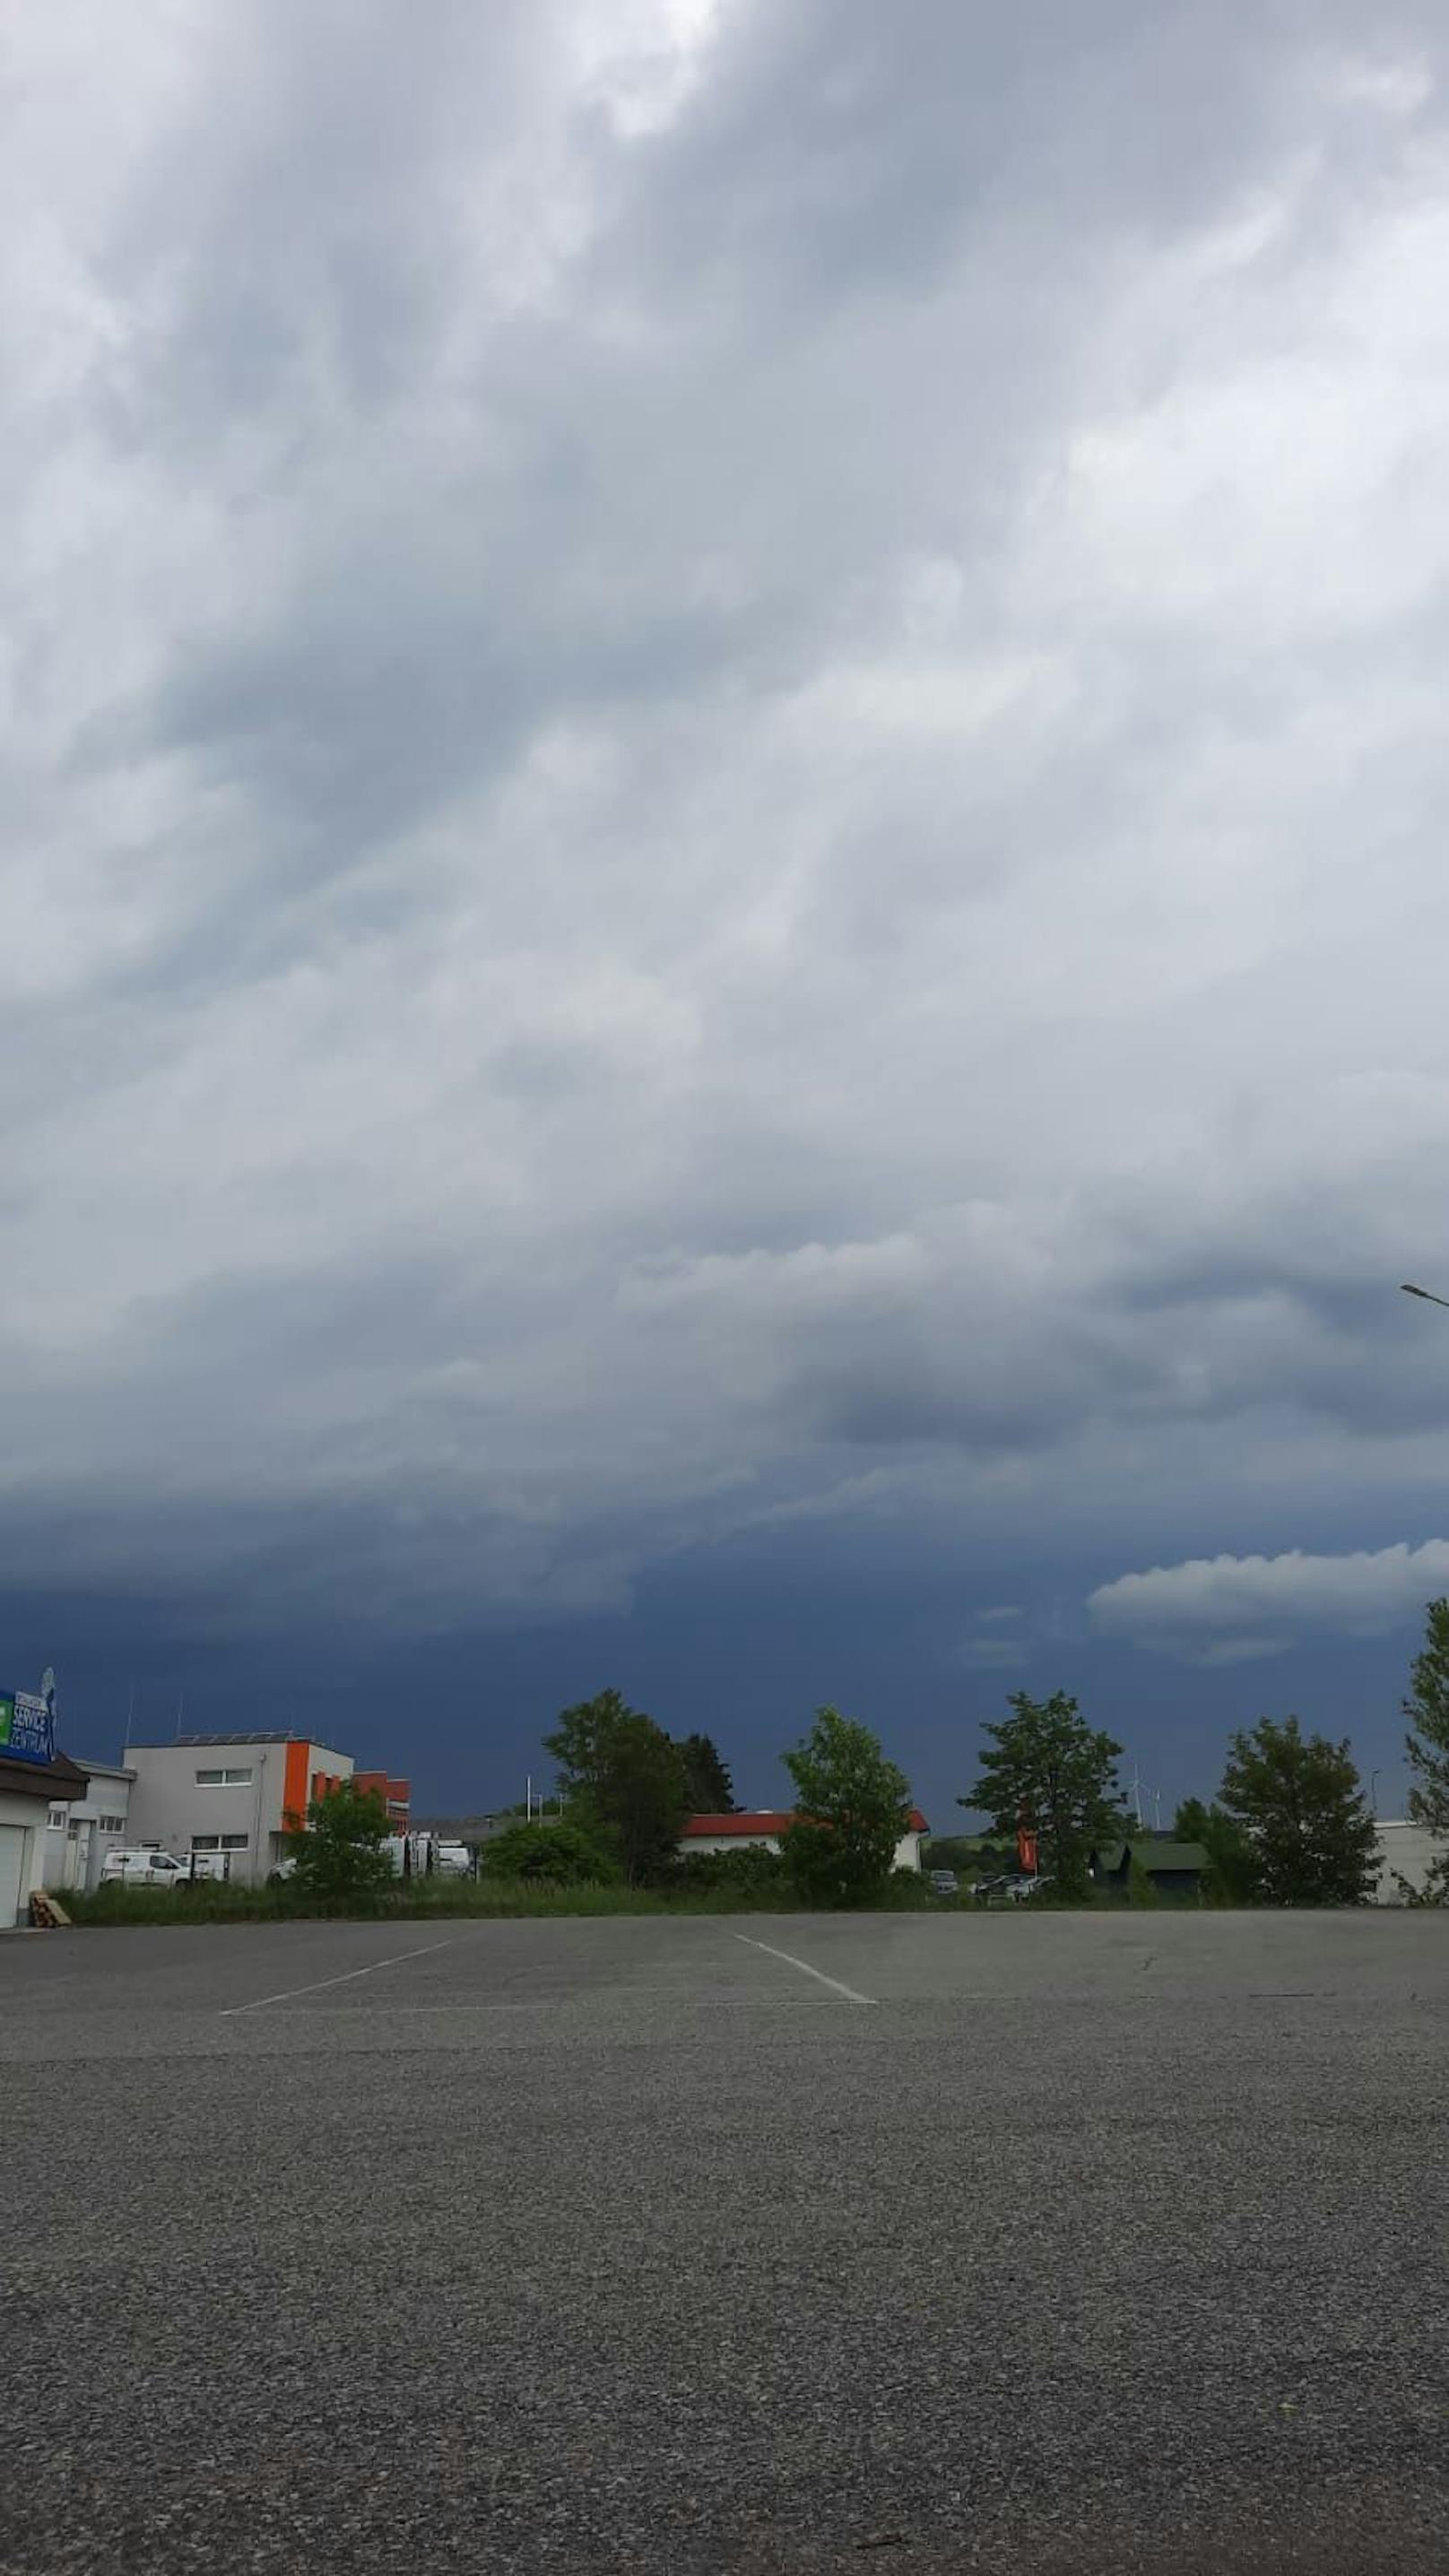 Leserreporter Markus beobachtete dunkle Wolken in Mattersburg, Burgenland